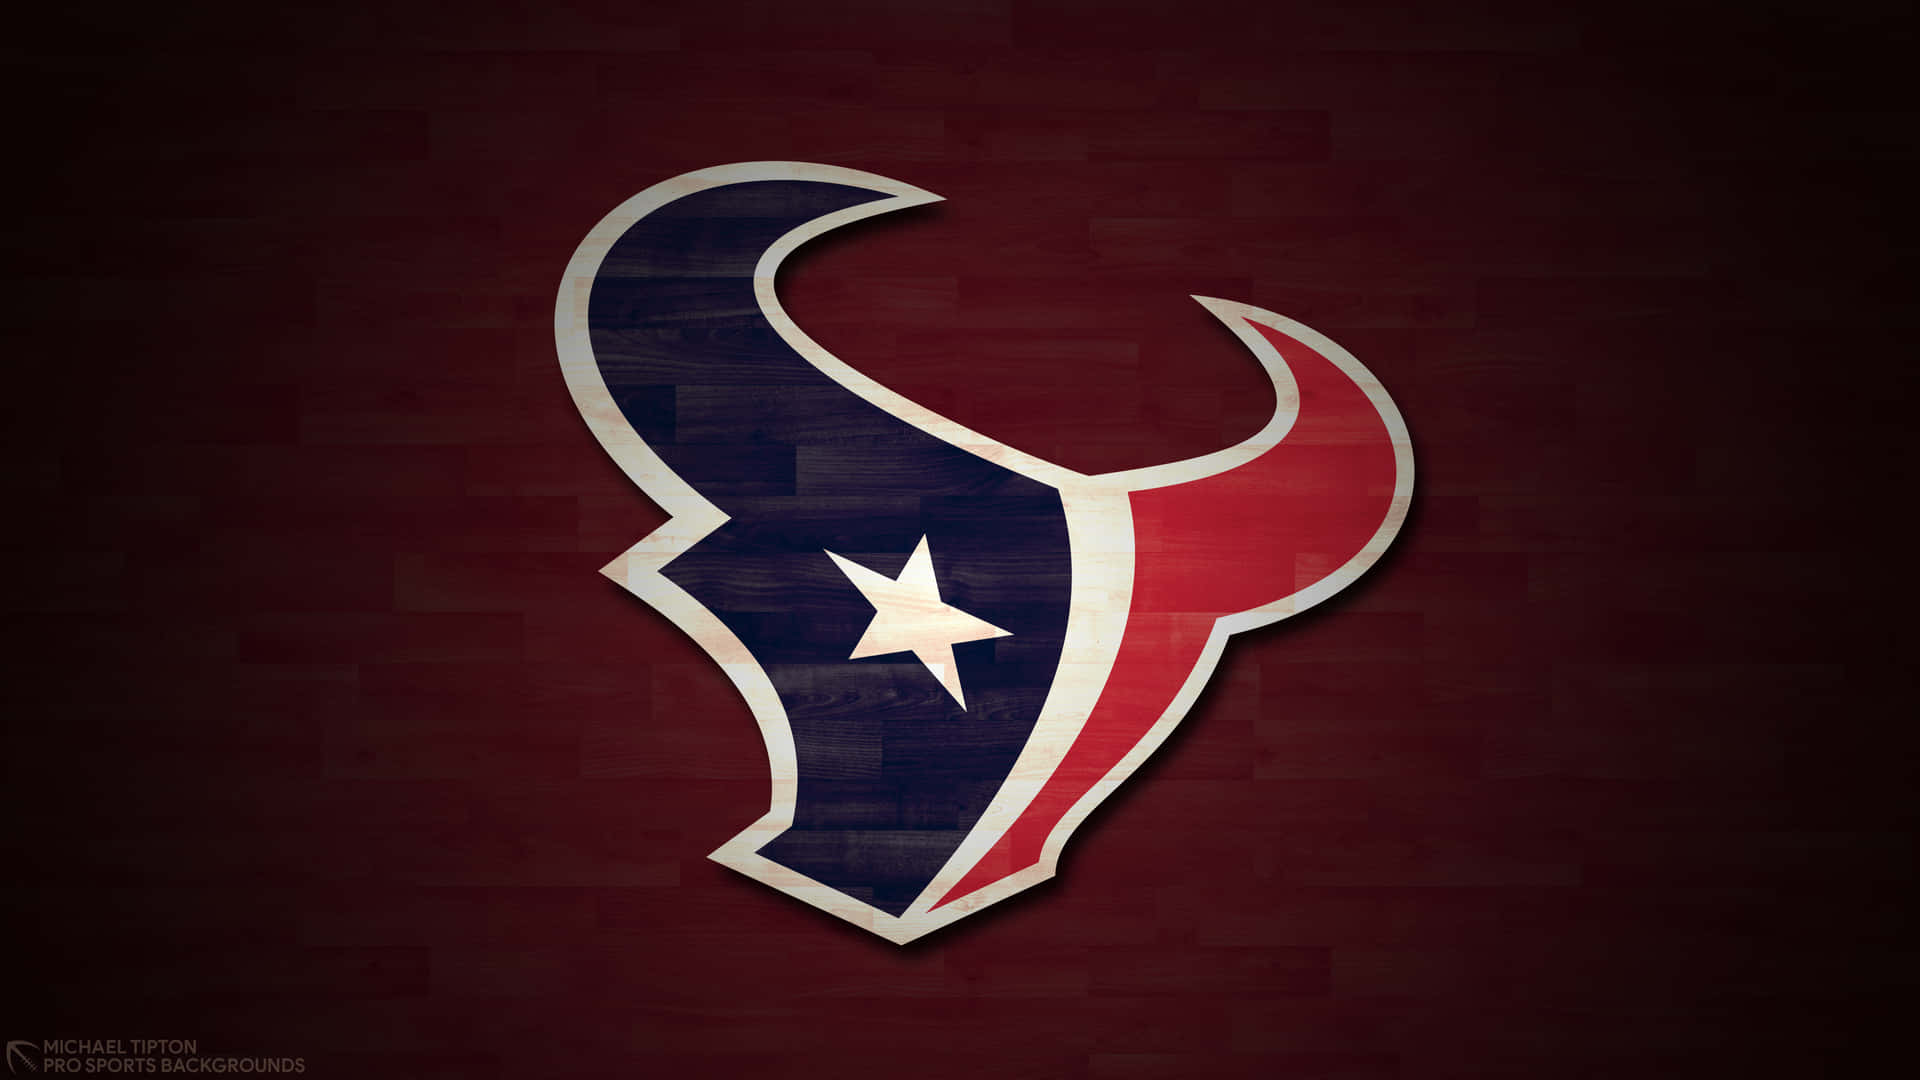 Logoför Houston Texans. Wallpaper